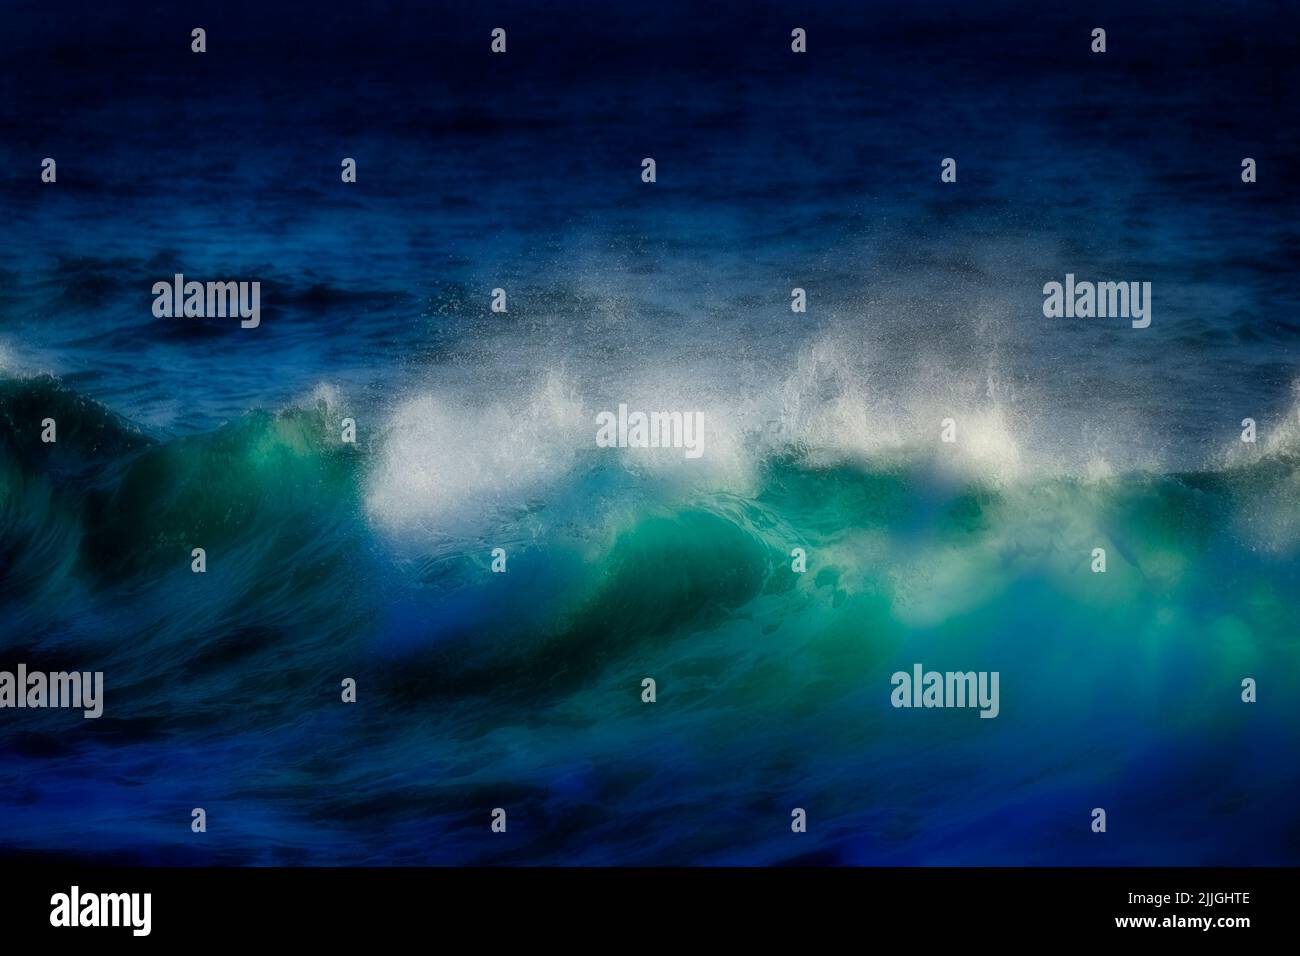 Las olas azules brillantes y de ensueño en una playa del océano hinchan el agua limpia y fresca Foto de stock